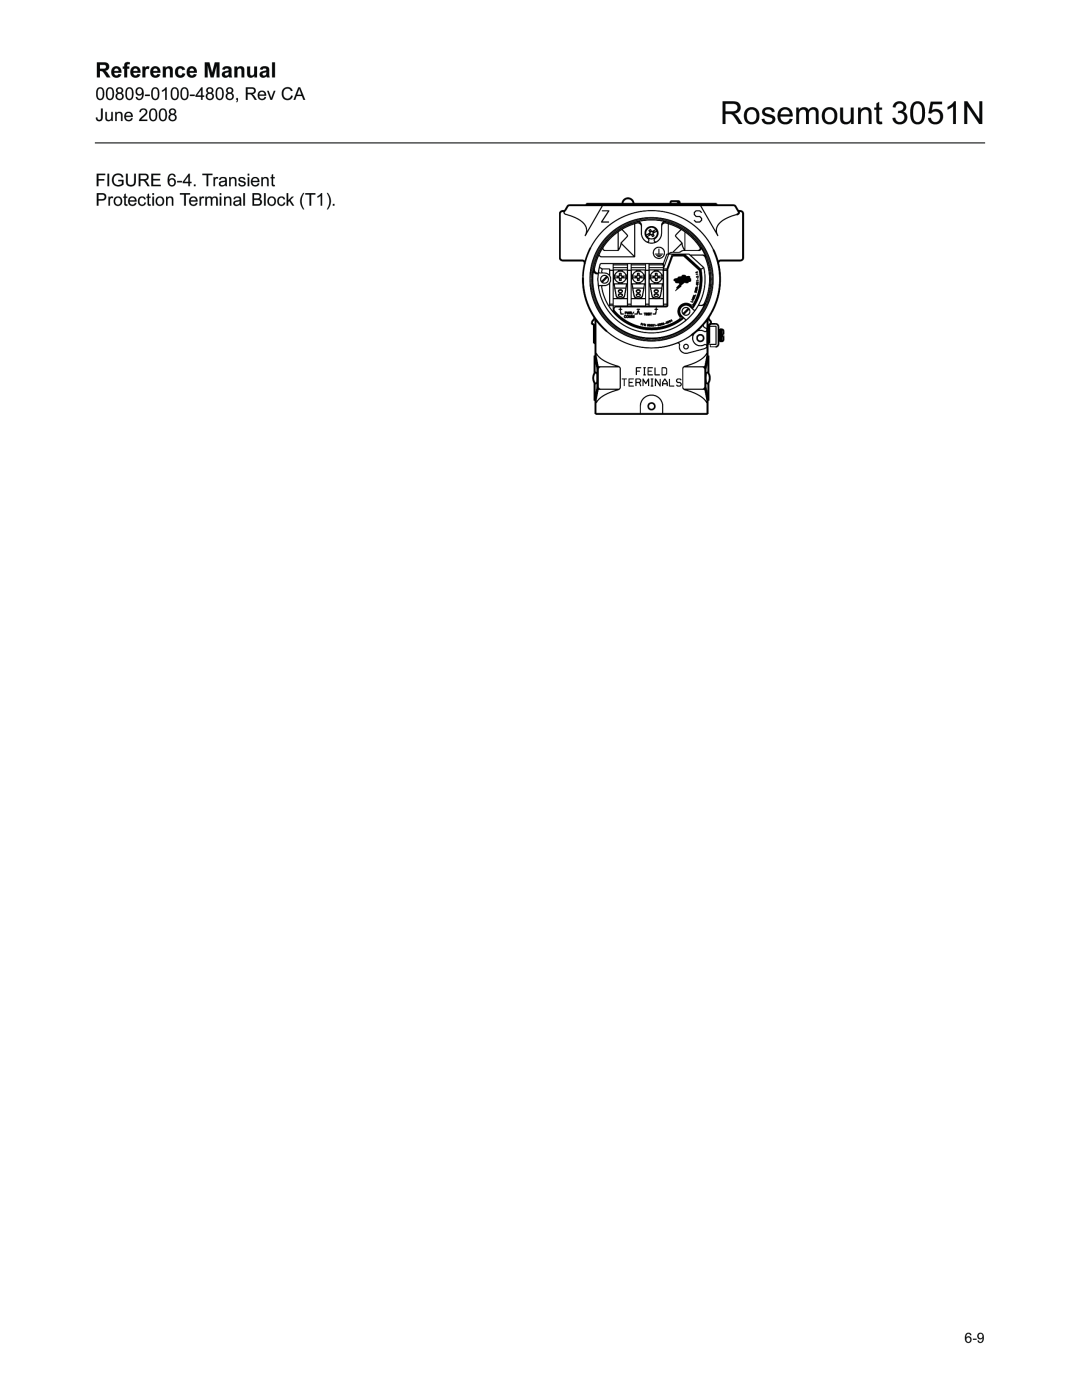 Emerson manual Rosemount 3051N, Reference Manual, 00809-0100-4808,Rev CA June, 4.Transient Protection Terminal Block T1 